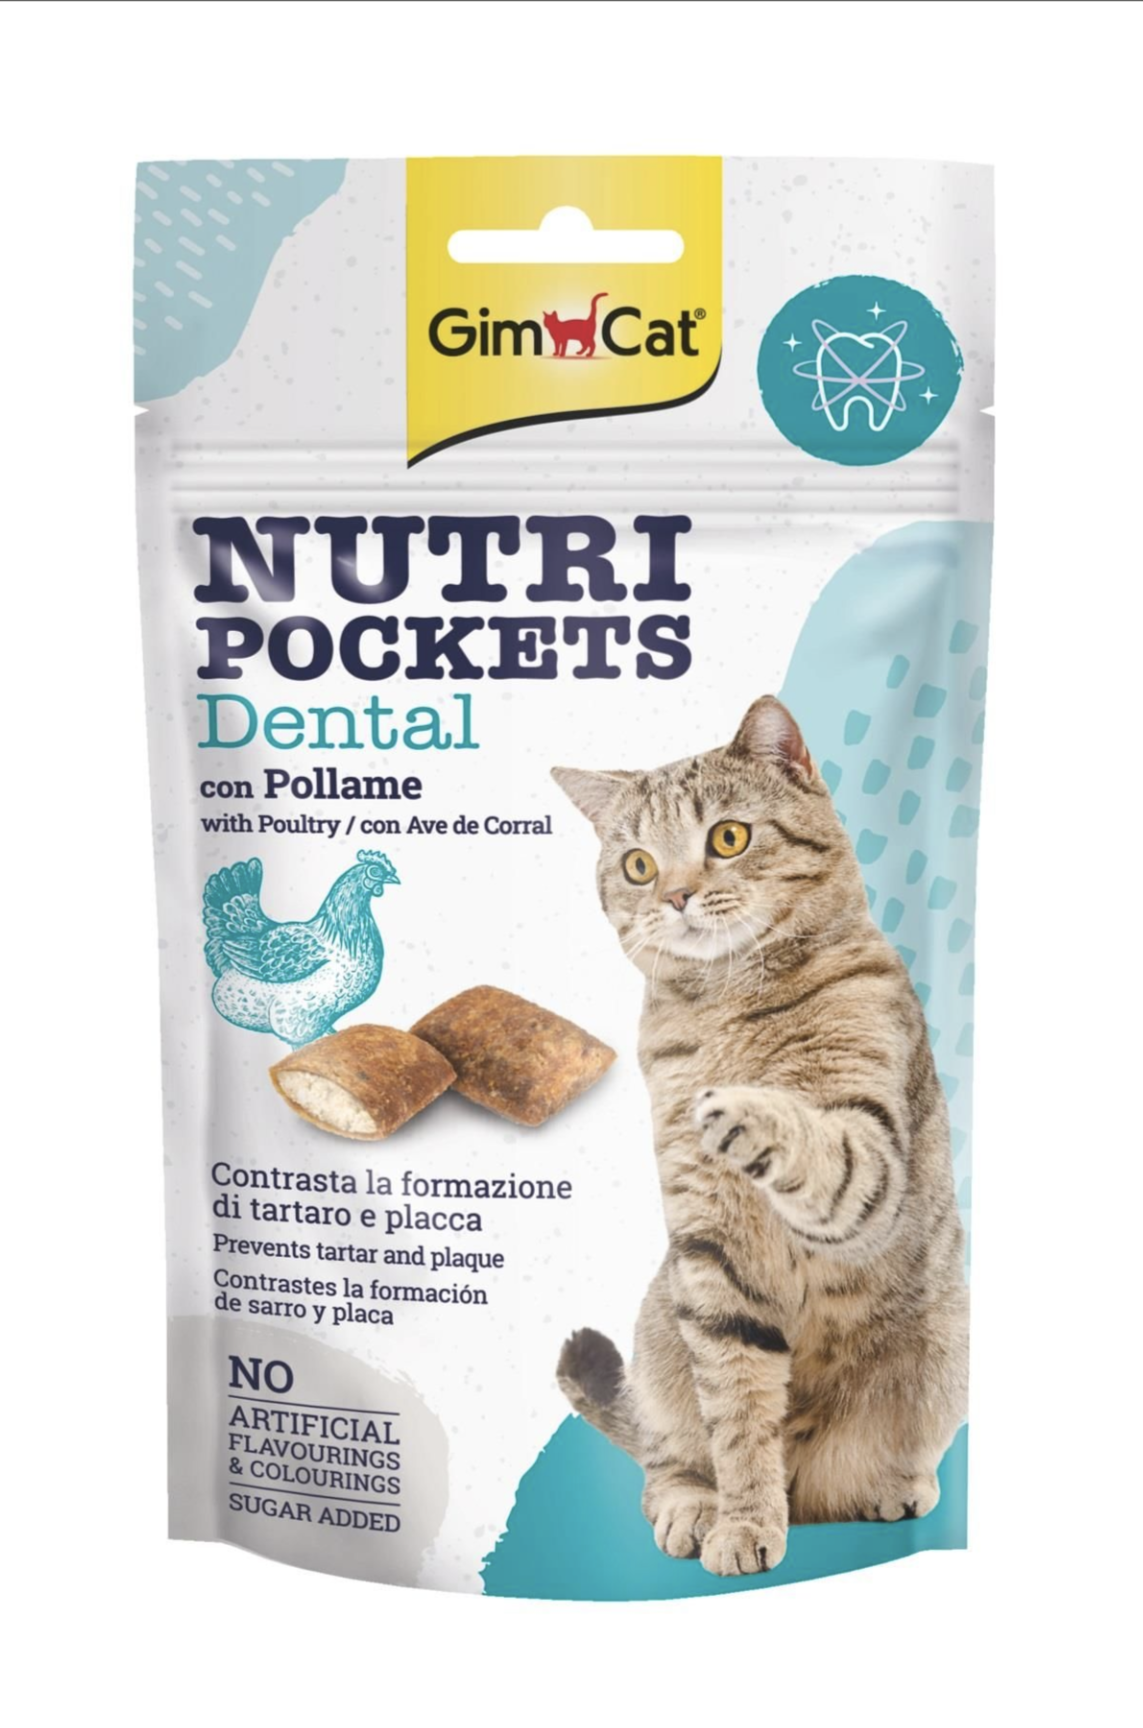 GimCat Nutripockets Dental Kedi Ödülü 60 gr